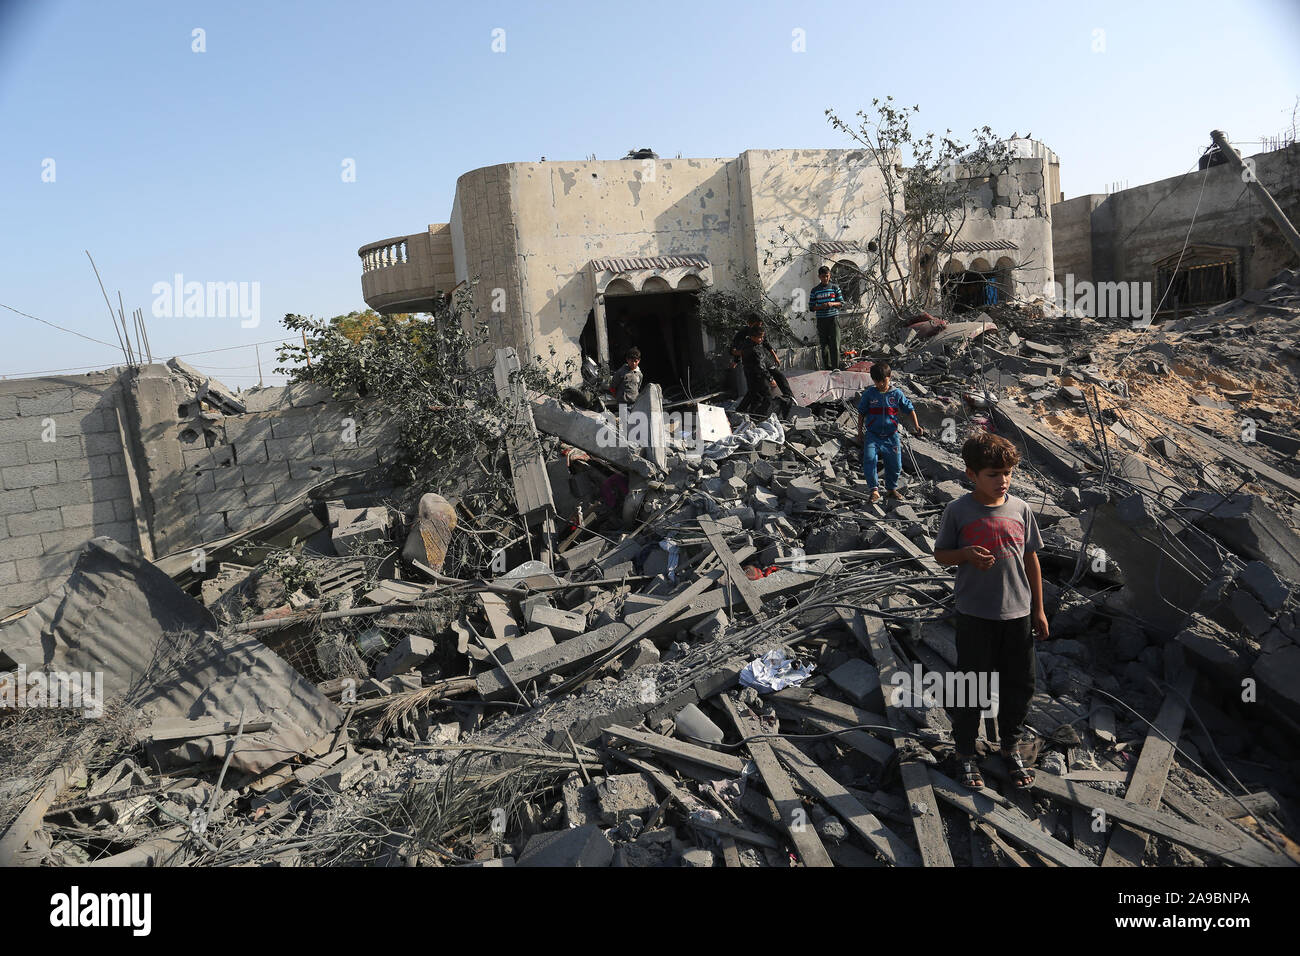 Palestinesi verificare la distruzione a seguito di un attacco aereo israeliano nel sud della striscia di Gaza, il Nov 14, 2019. Foto di Abed Rahim Khatib Foto Stock